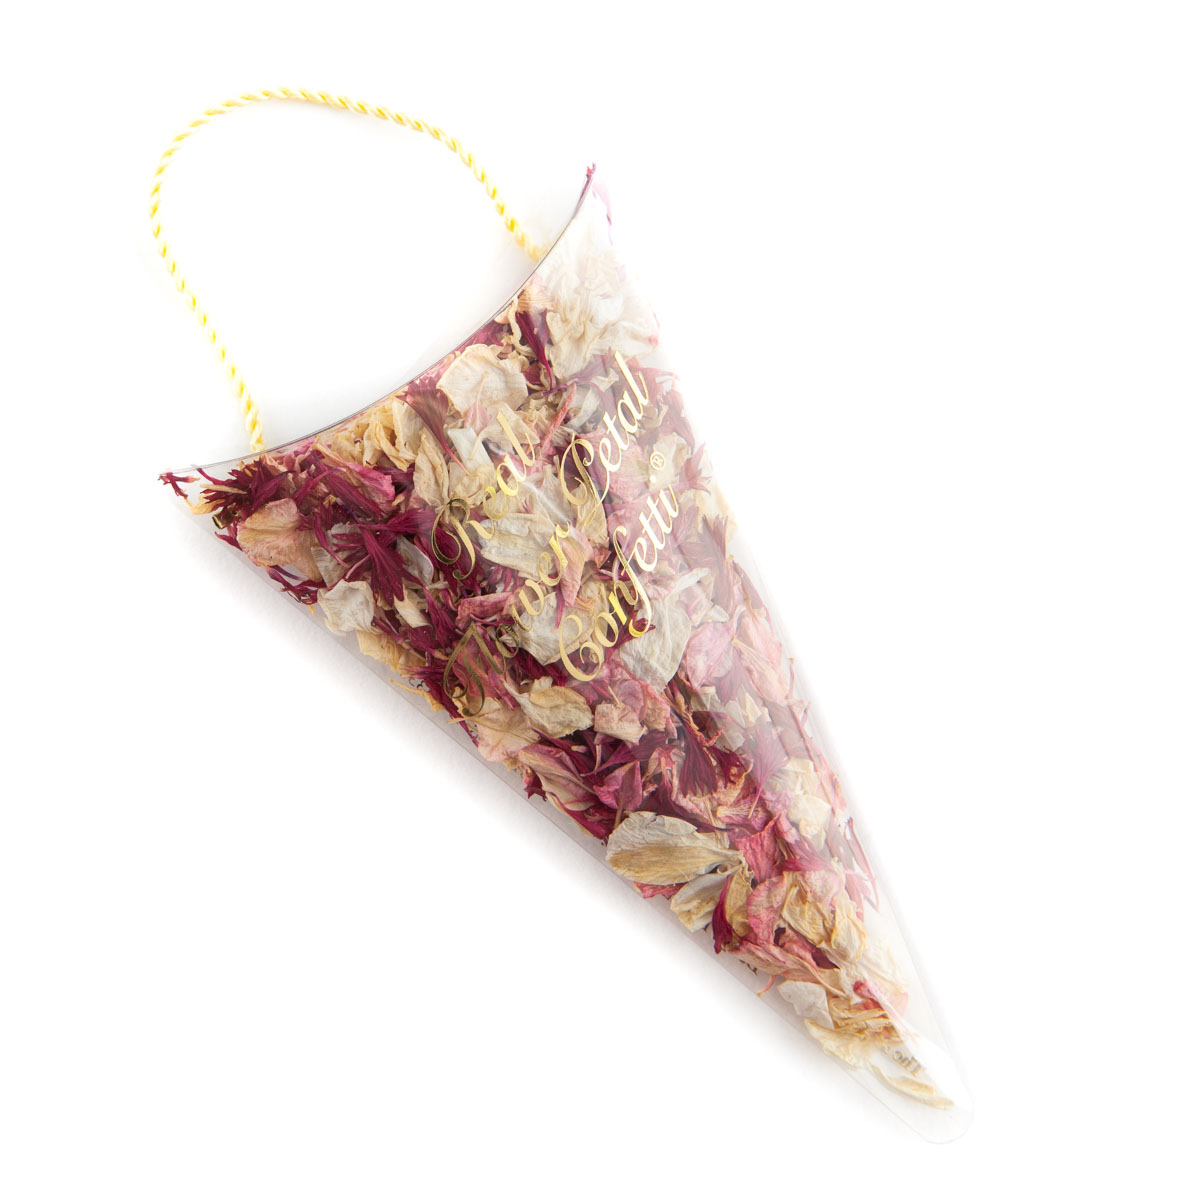 Ruby Twist confetti petals - Biodegradable Confetti - Real Flower Petal Confetti - Sachet